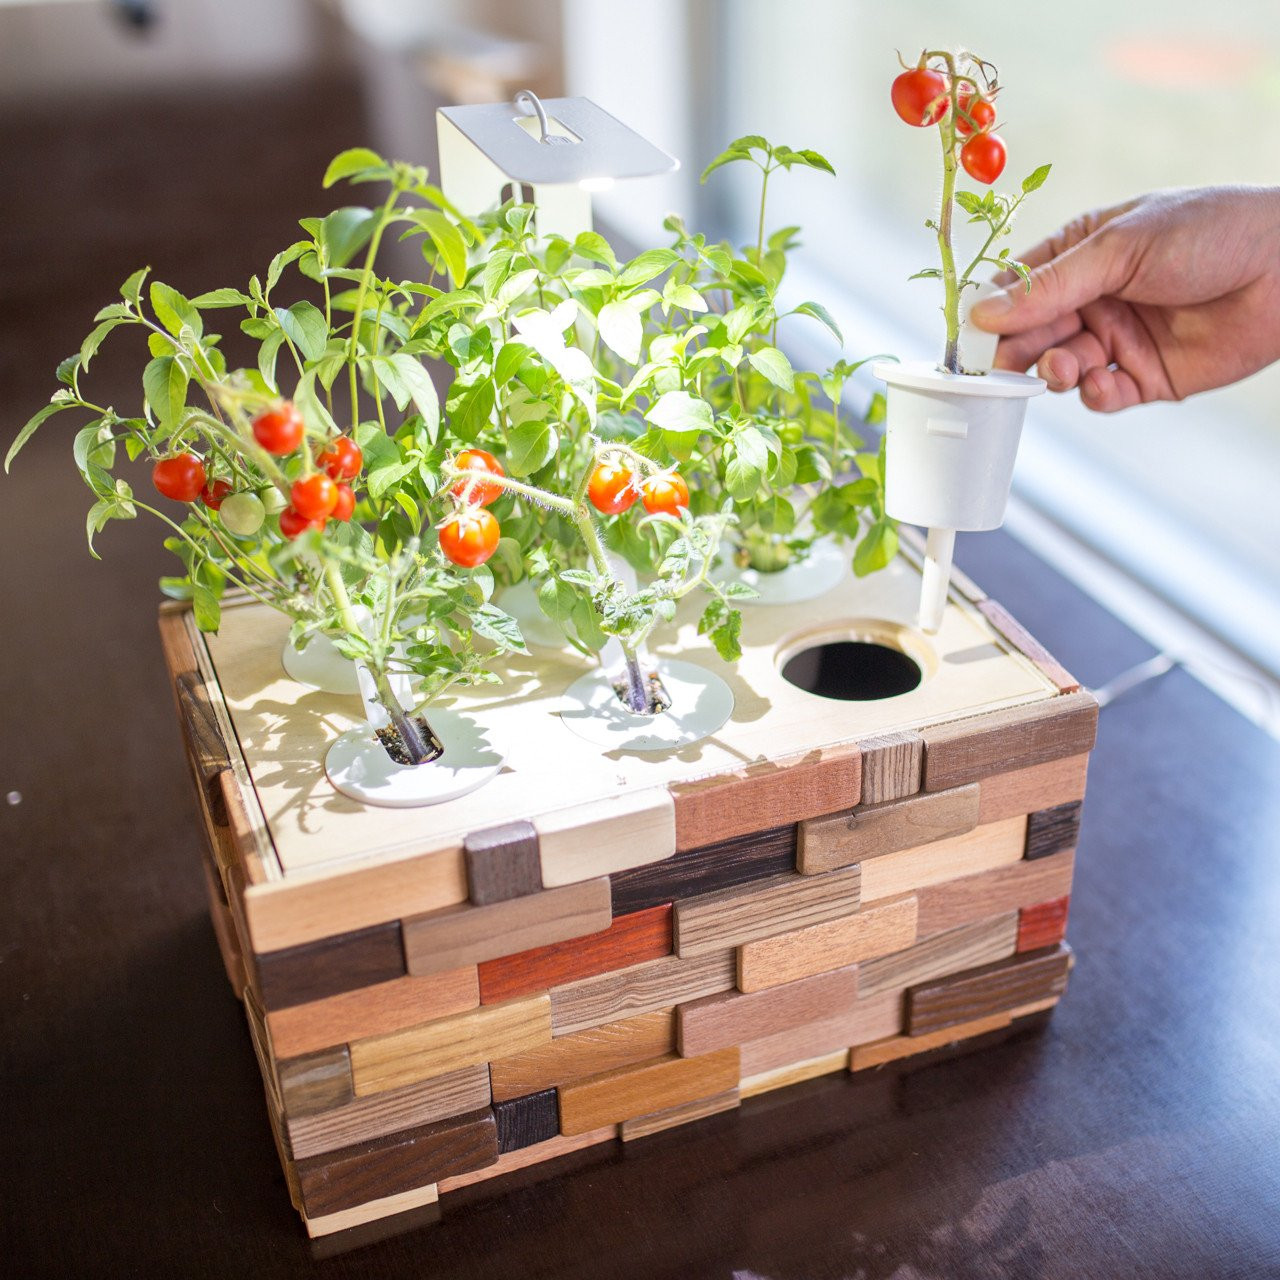 Best ideas about DIY Indoor Gardening
. Save or Pin DIY Indoor Garden Kit Now.